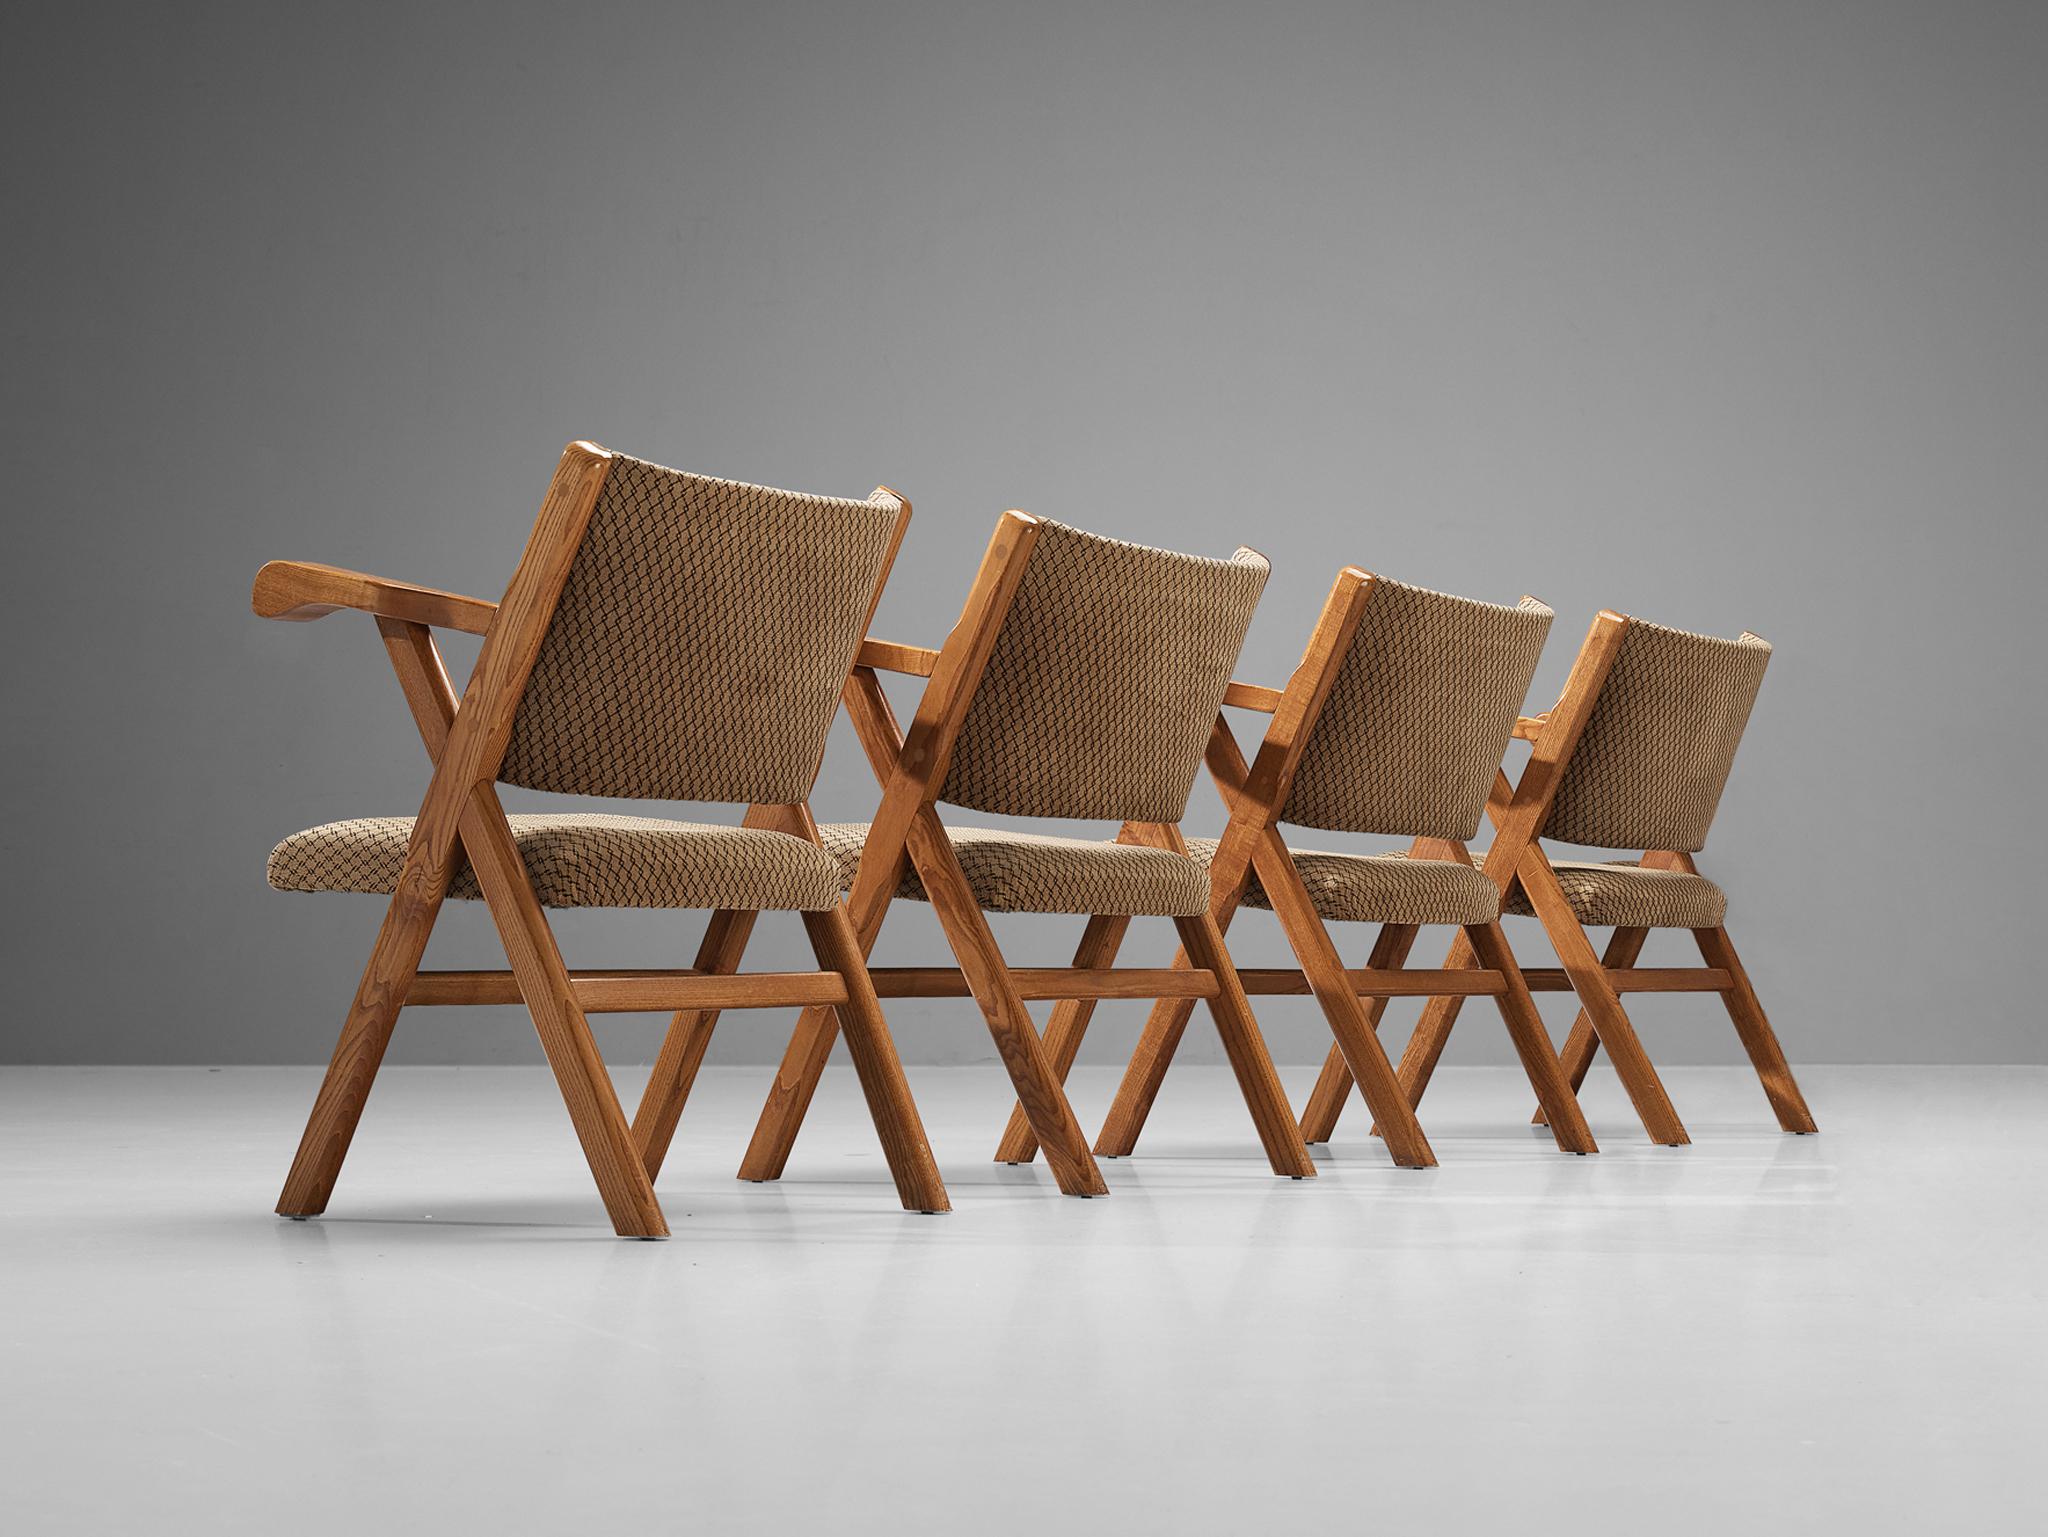 Sessel, Esche, Stoff, Italien, 1960er Jahre. 

Robuste italienische Sessel aus massivem Eschenholz und beigefarbener, karierter Polsterung. Das x-förmige Design unterstreicht die Eleganz dieses rustikalen Stuhls. Außerdem weisen die Armlehnen dieser